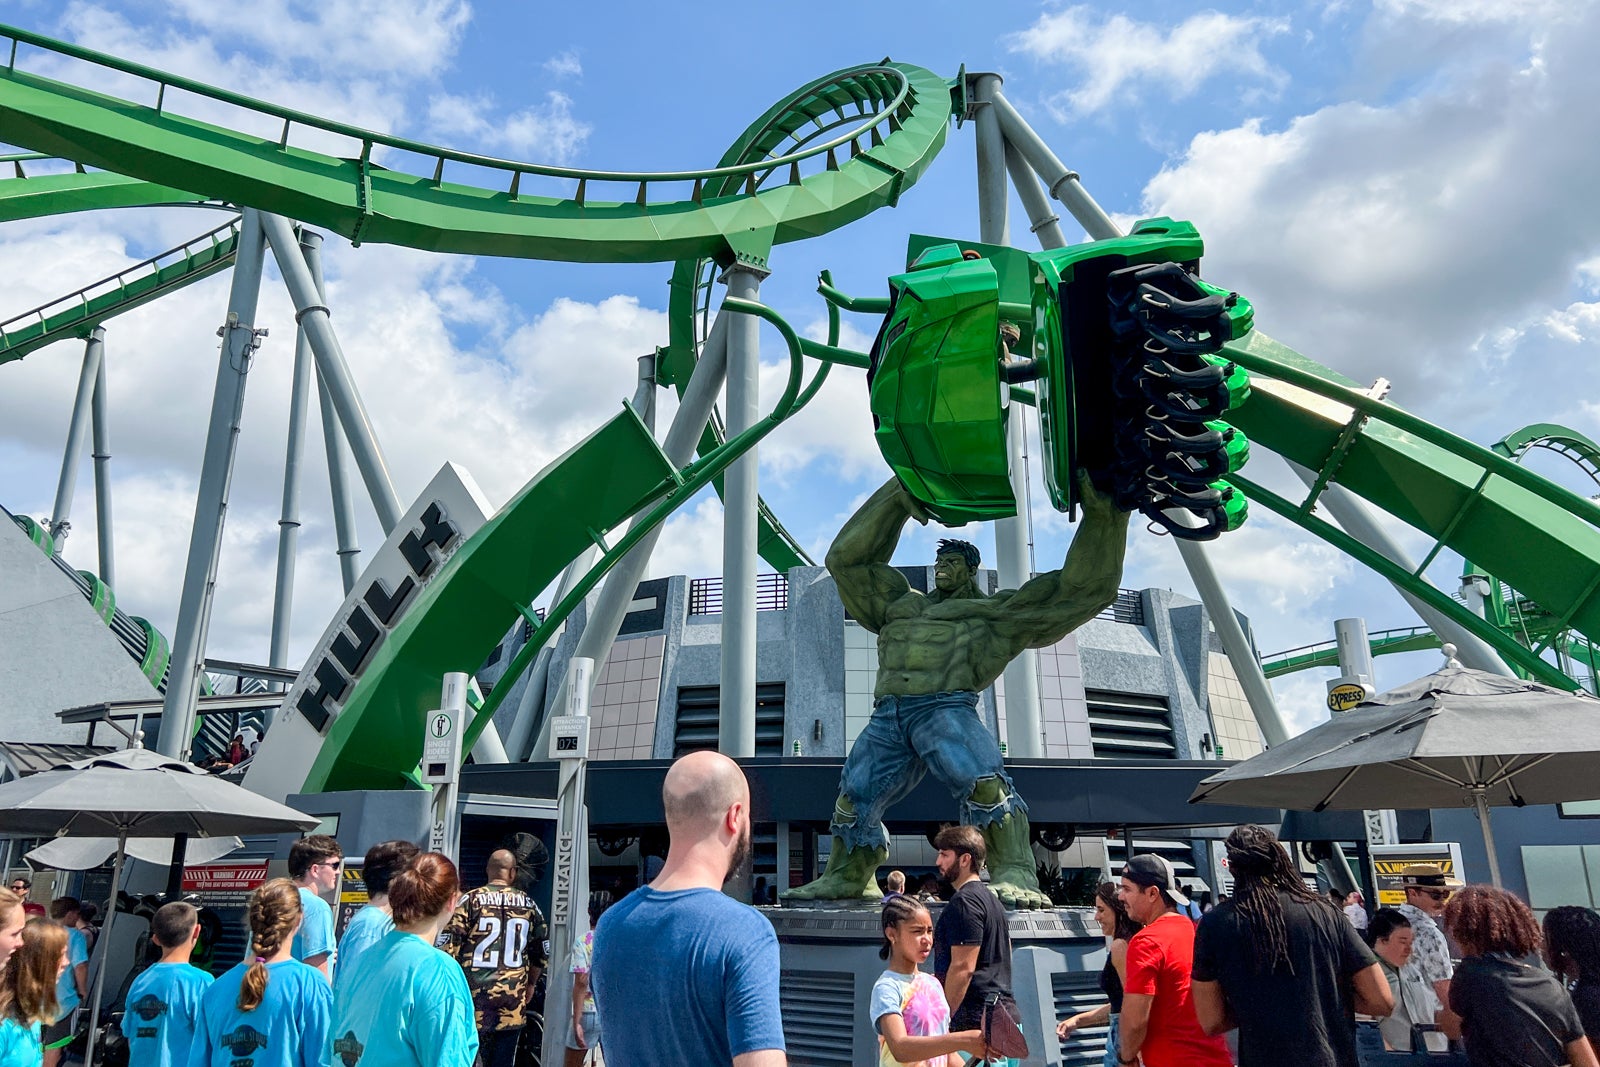 The Incredible Hulk Coaster at Universal Orlando Resort